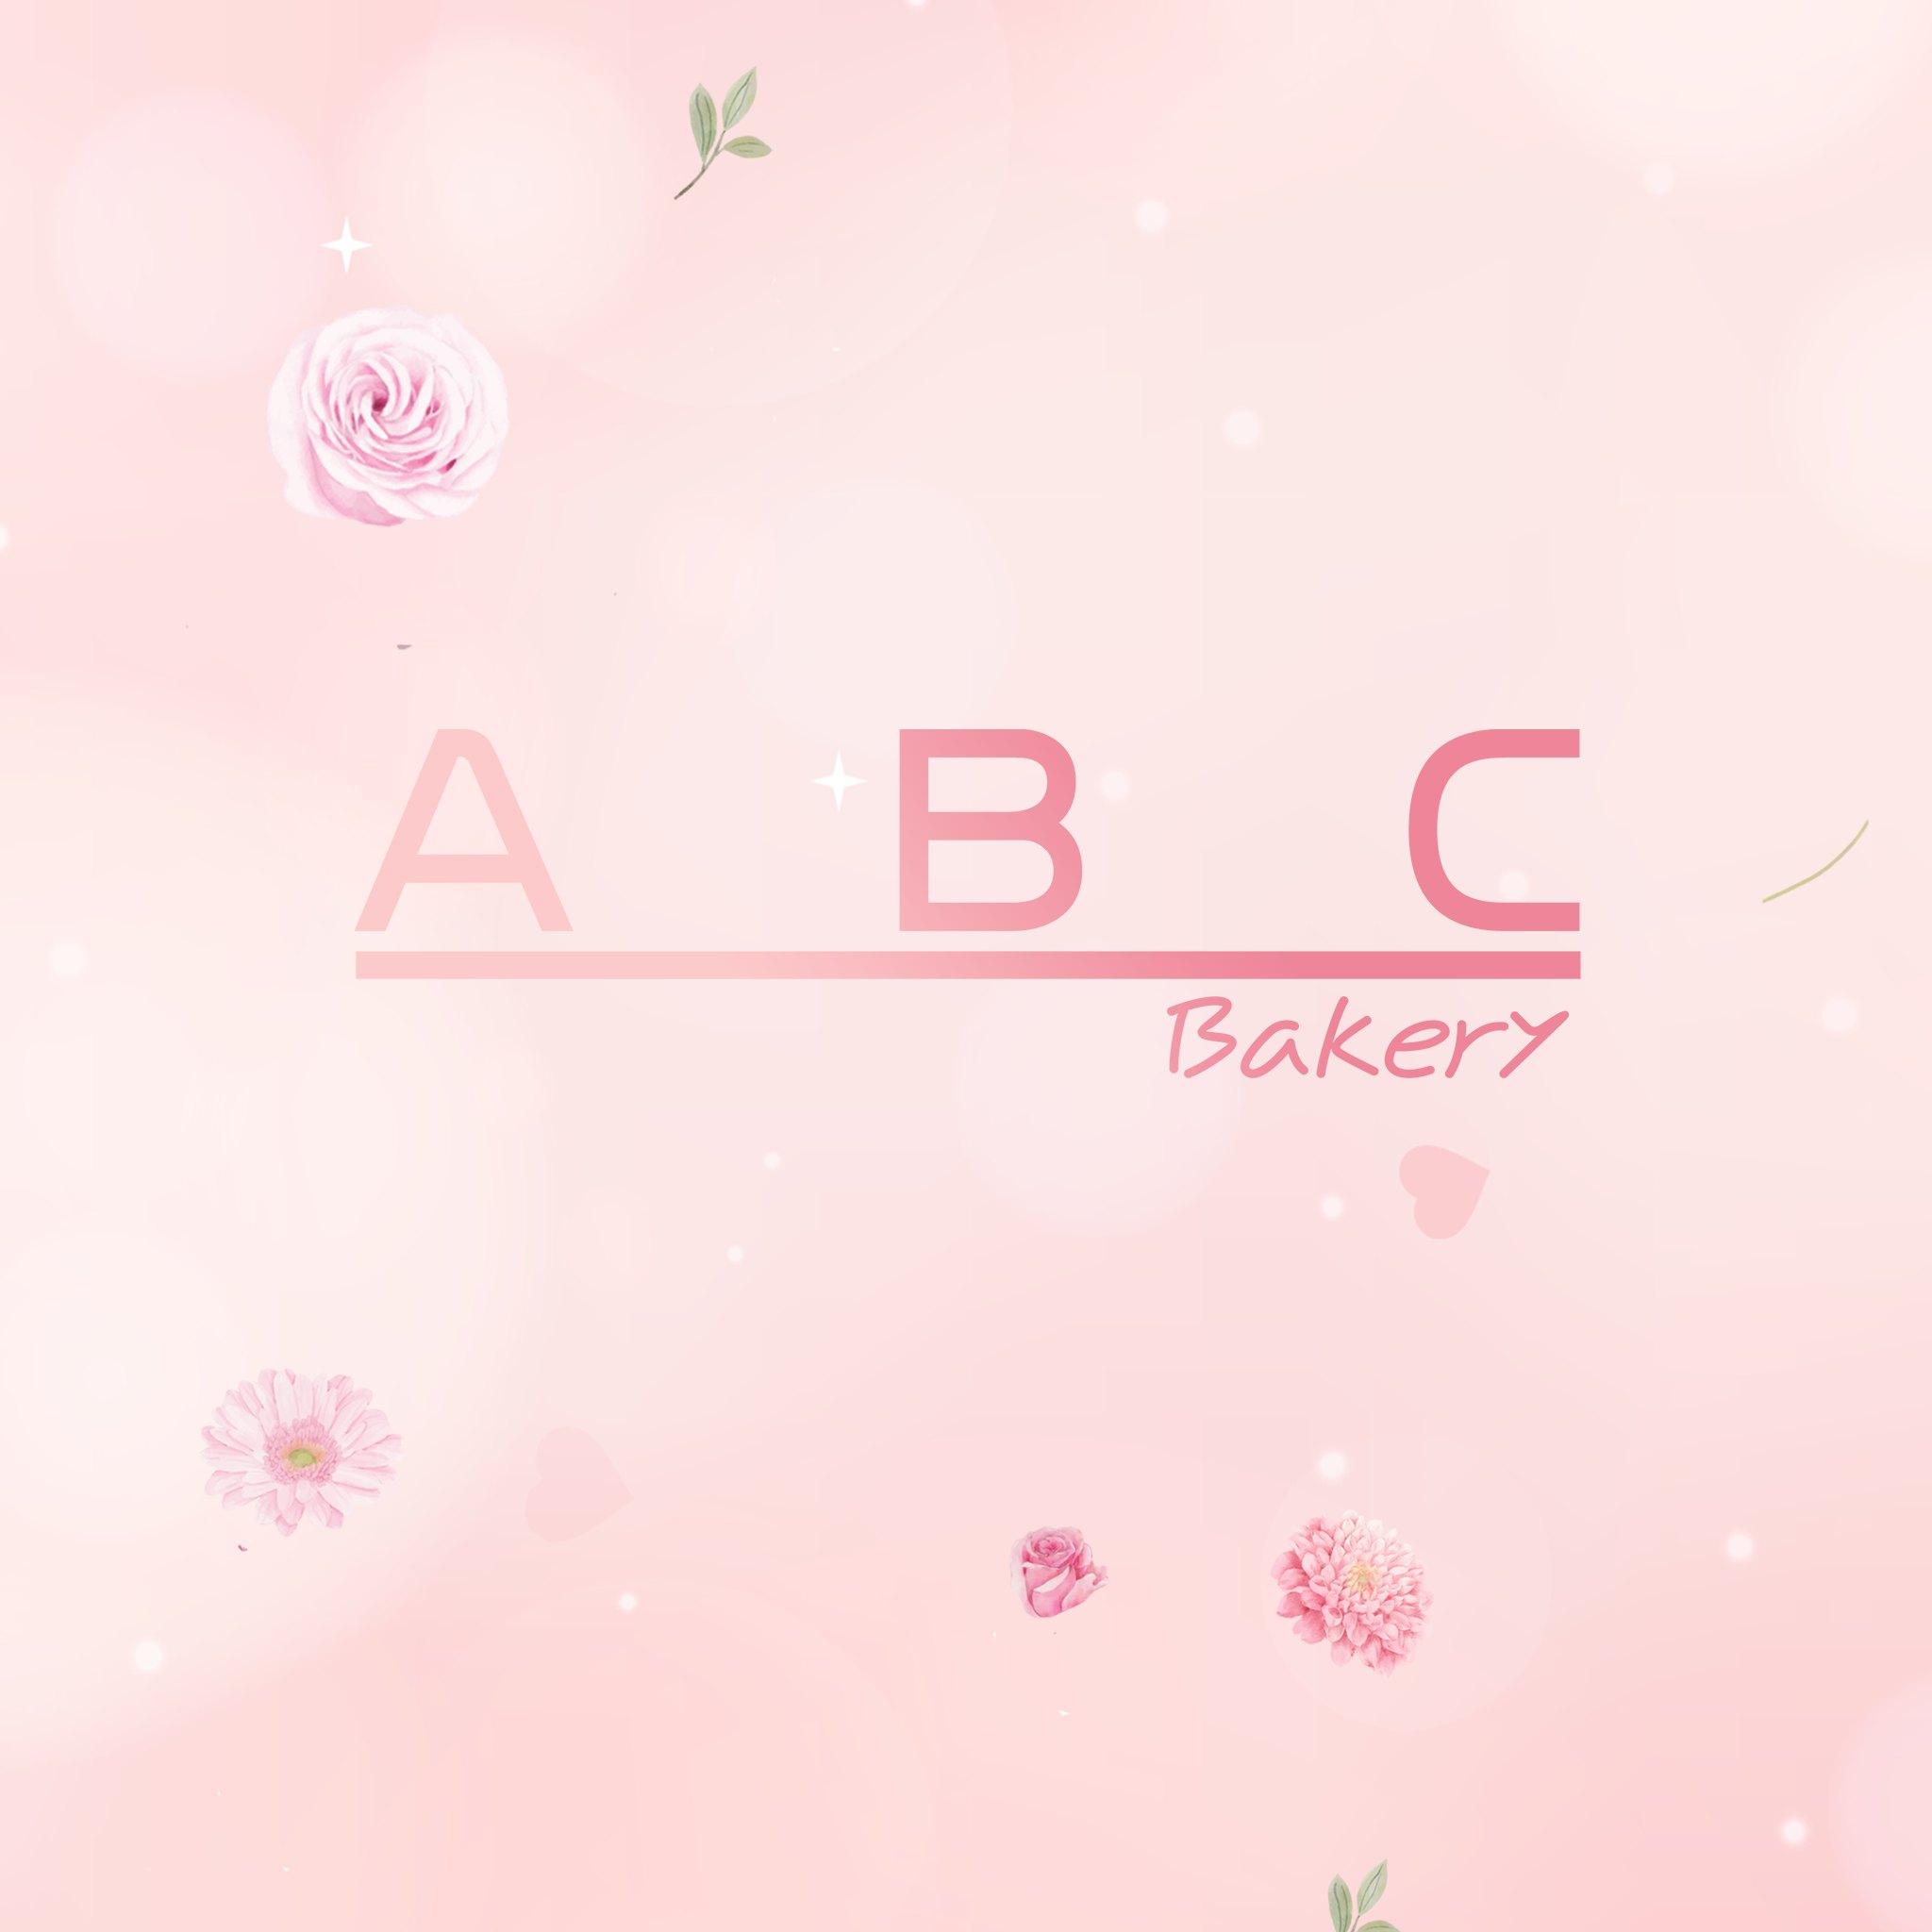 ABC Bakery Danang